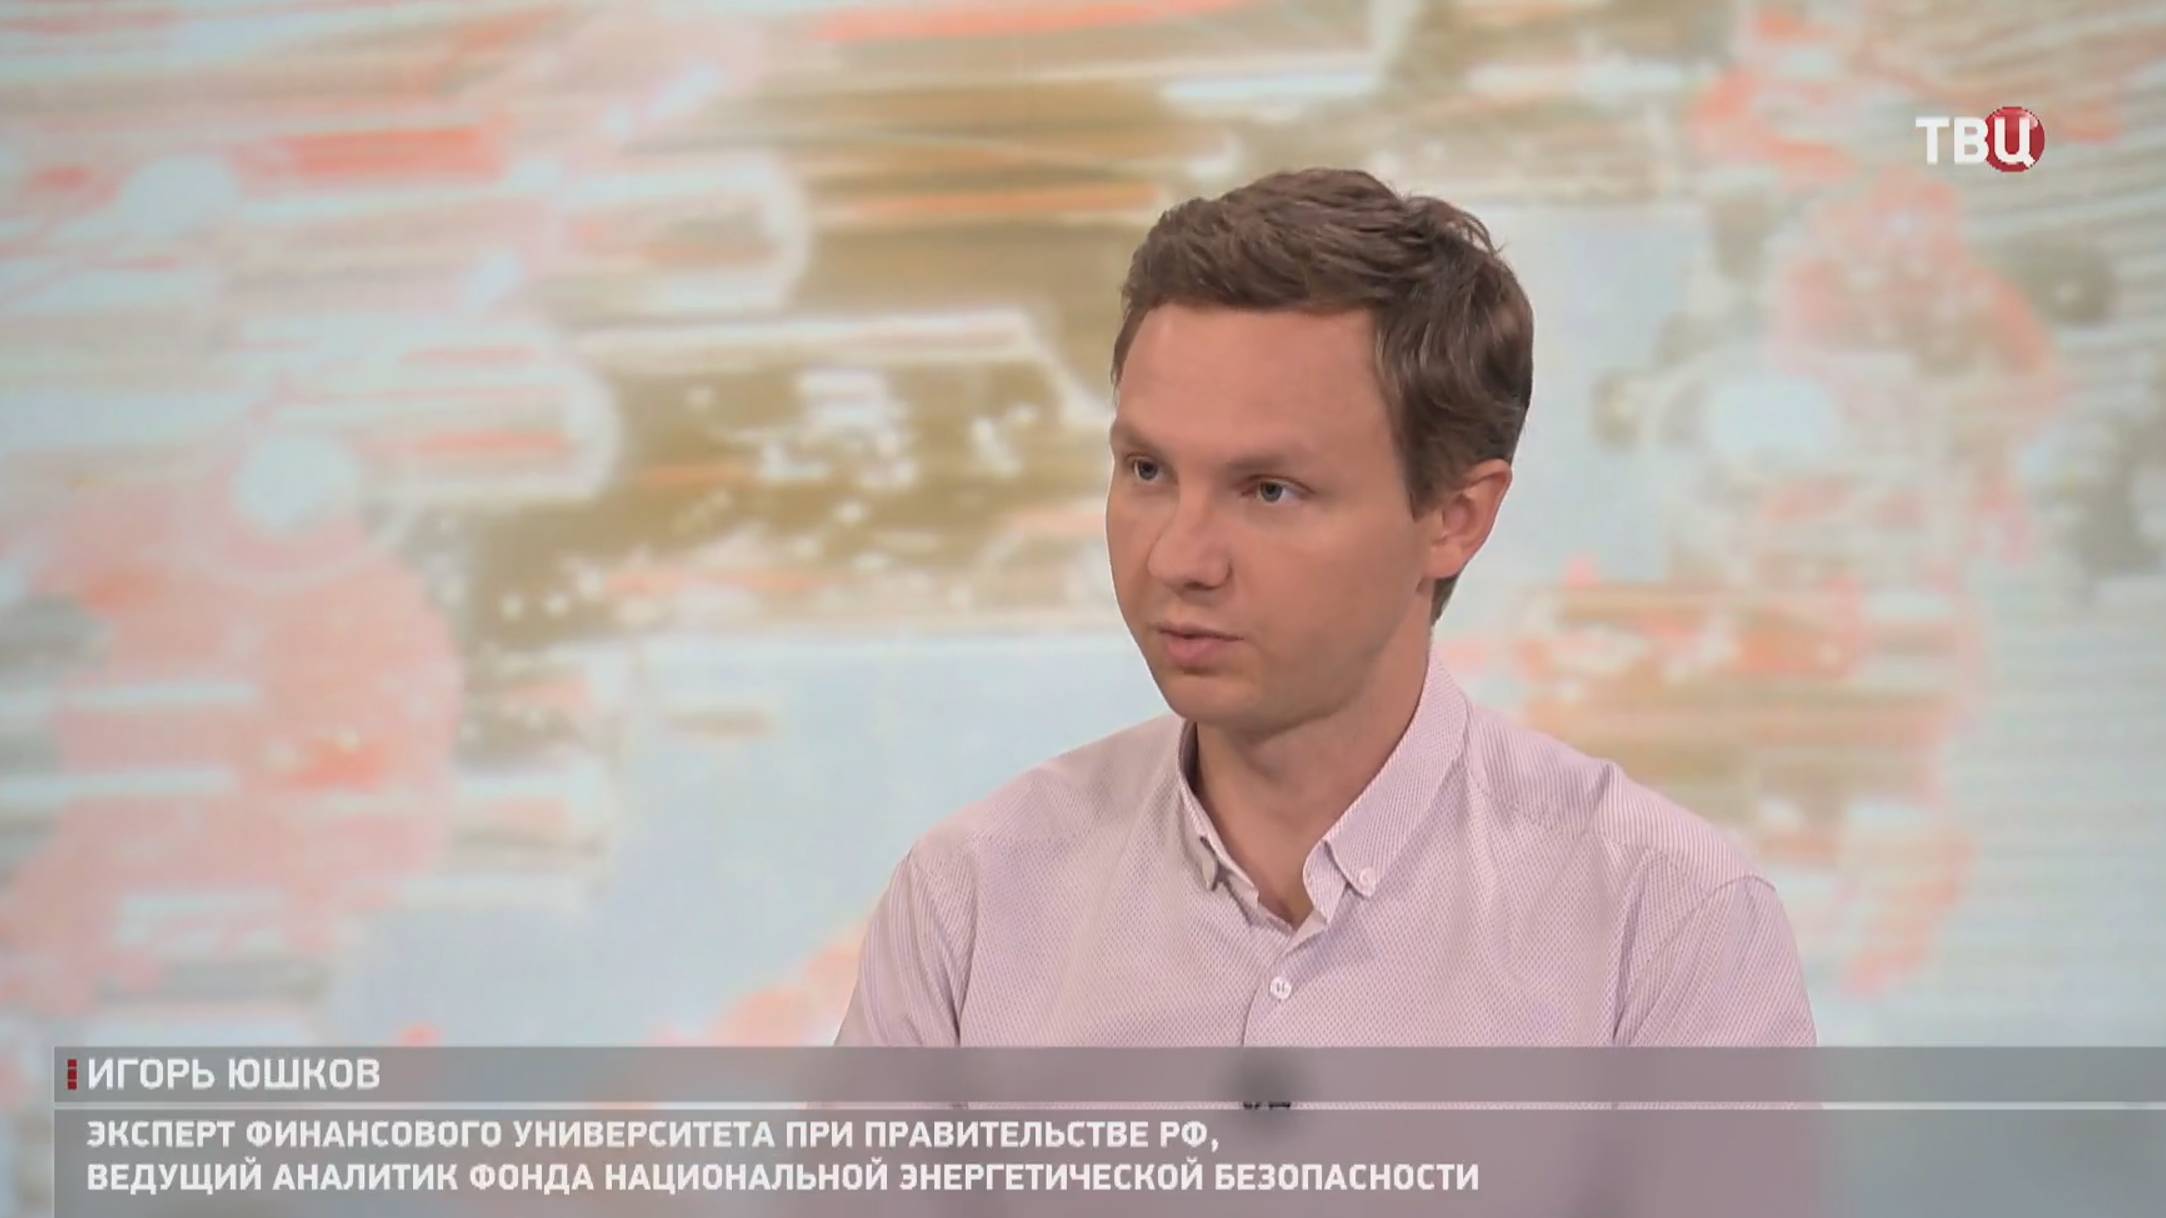 Юшков: Европейцам есть чем ответить на нефтяной шантаж Киева / События на ТВЦ